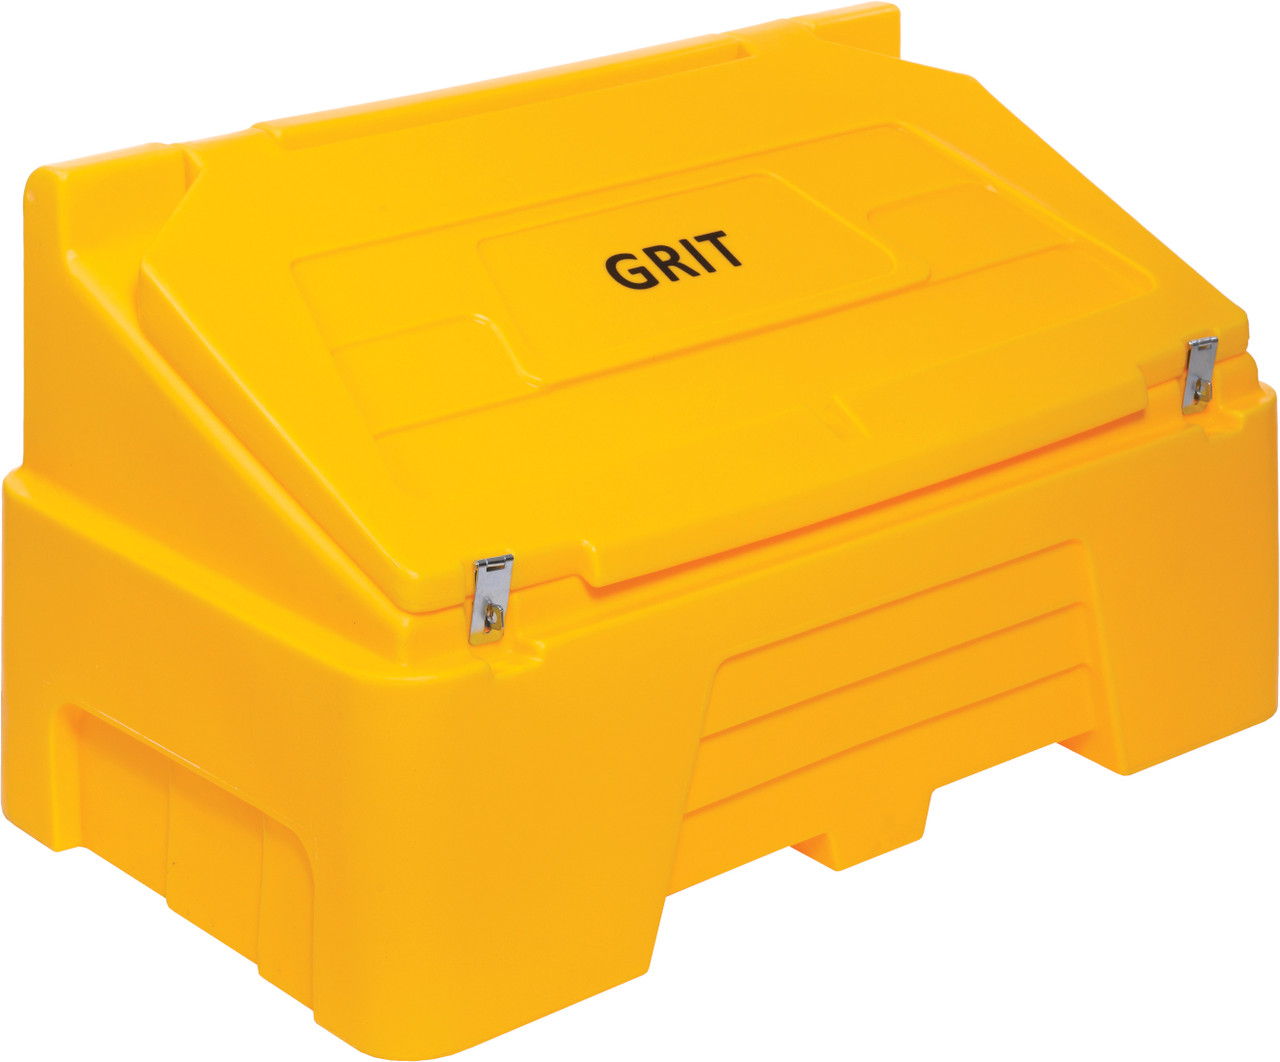 Grit Bin with Locking Option - 400 Ltr - Yellow - RW0002Y